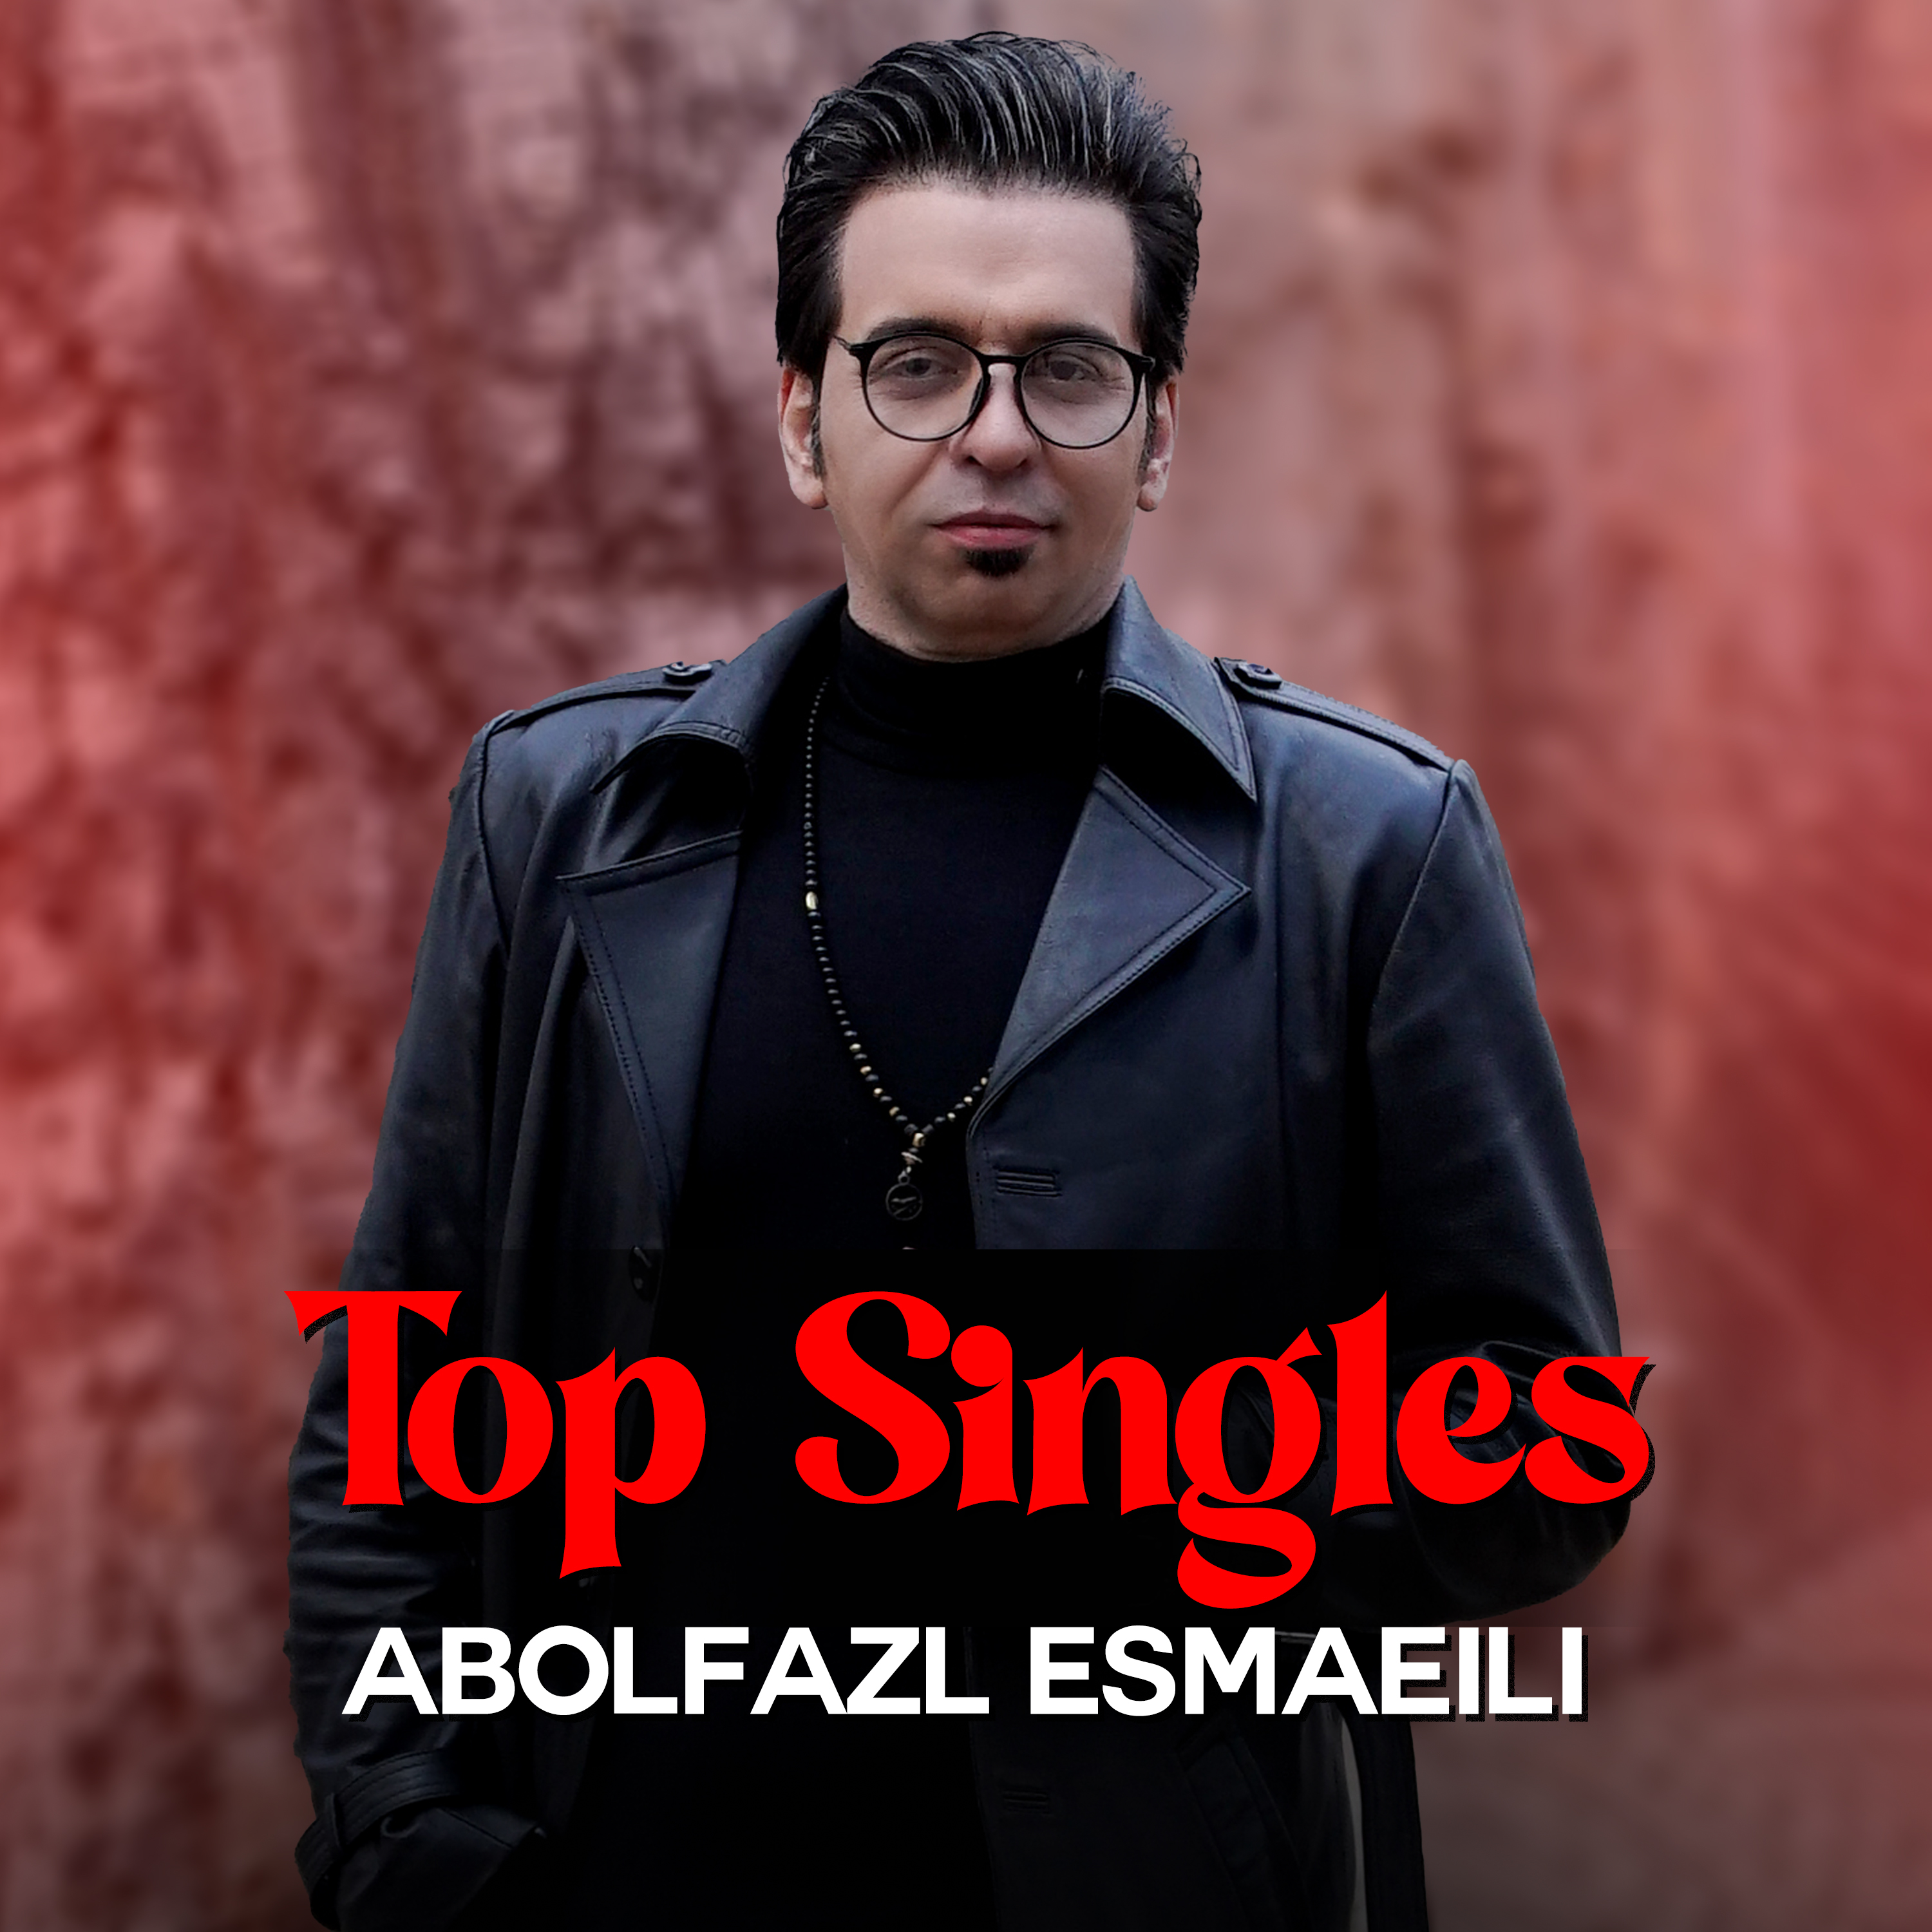  دانلود آهنگ جدید ابوالفضل اسماعیلی - زن نموخوام | Download New Music By Abolfazl Esmaeili - Zan Nomokham